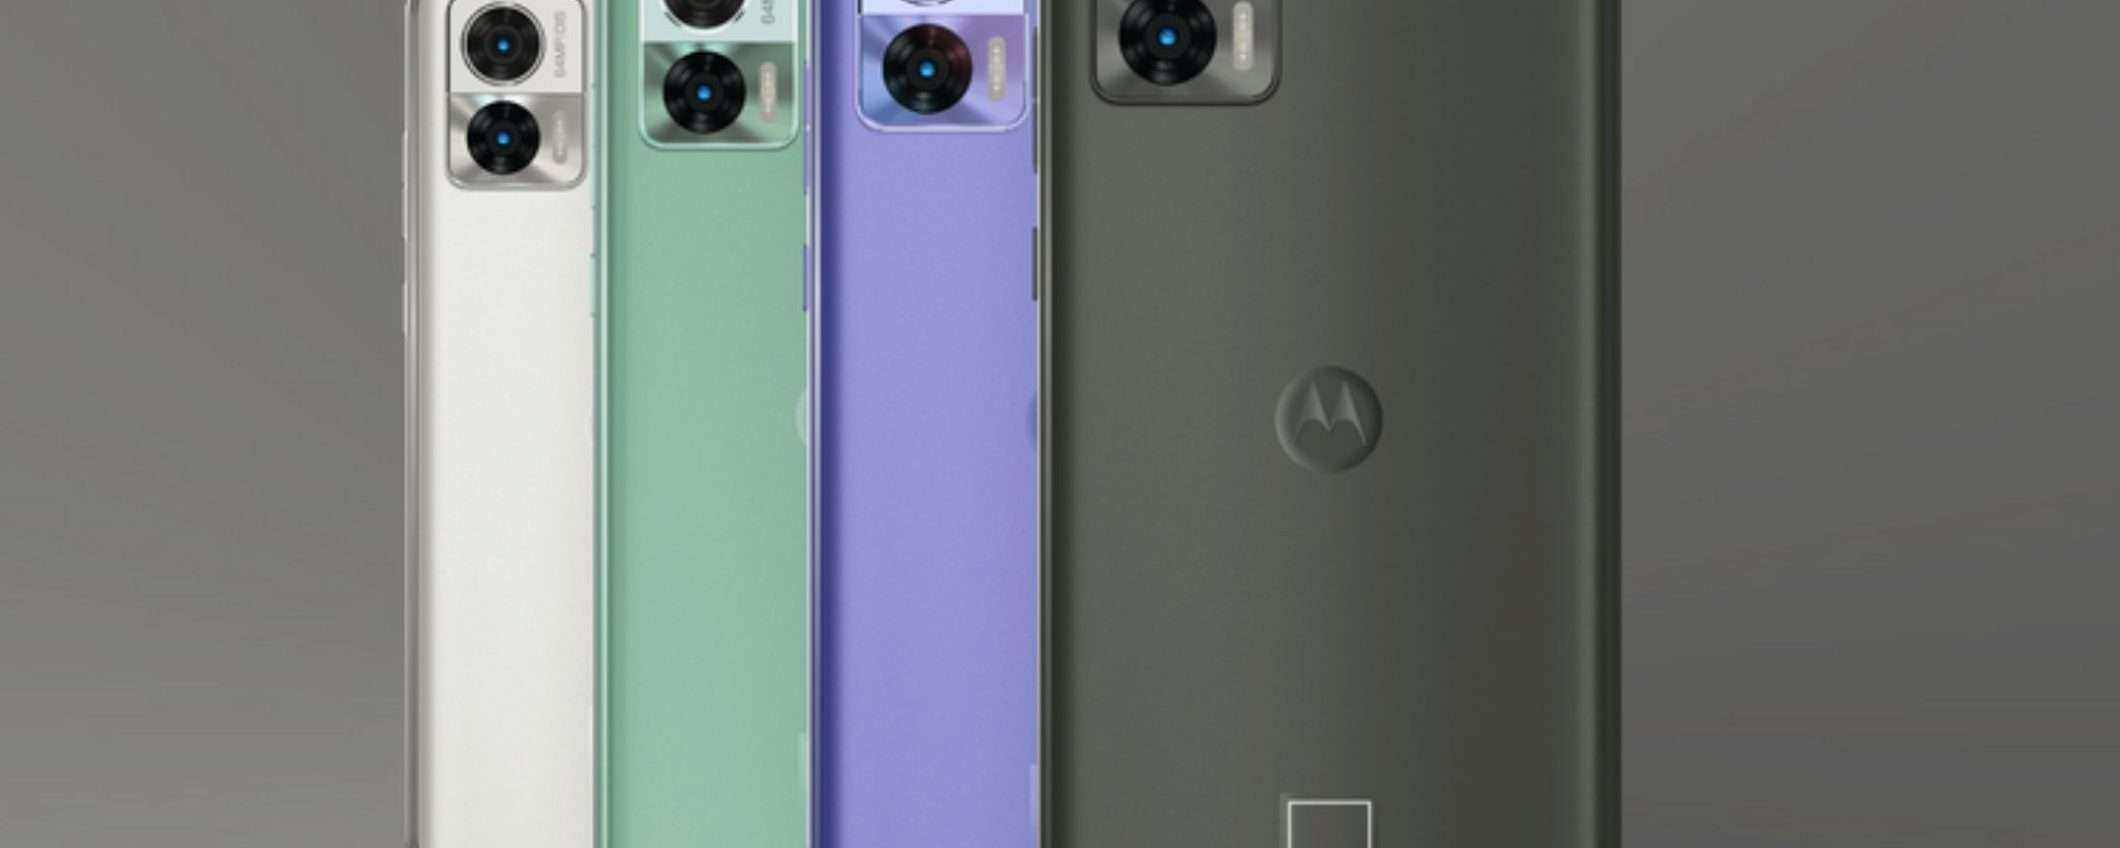 POTENZA ESTREMA con Motorola edge 30 Neo 5G, oggi a -130€ su eBay (-43%)